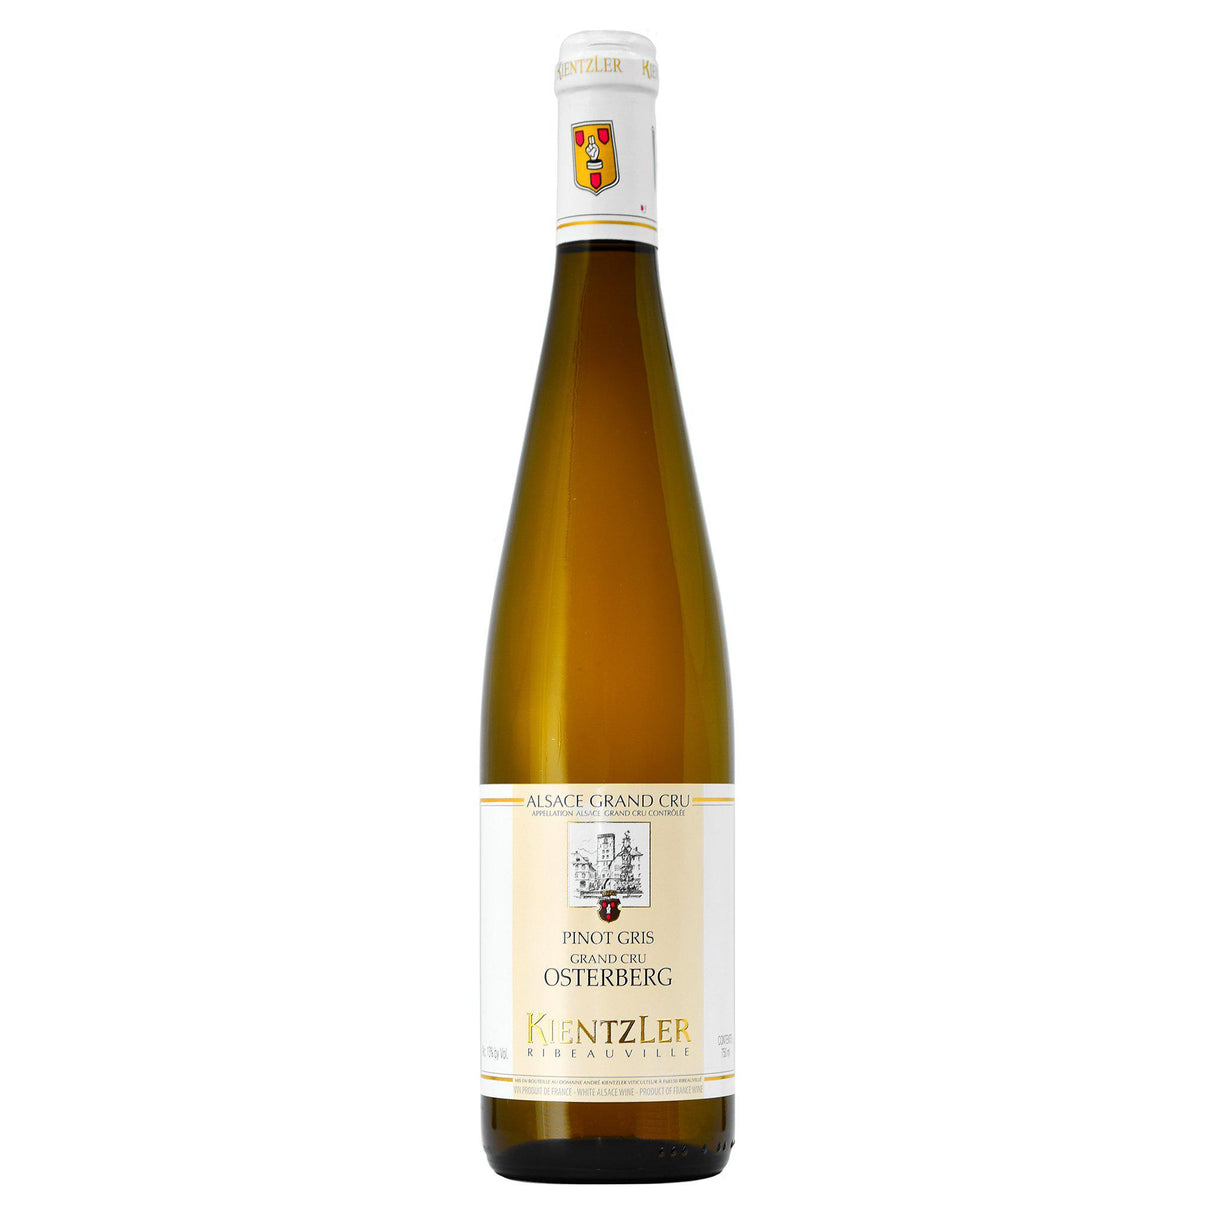 Andre Kientzler Pinot Gris Osterberg 2018 (6 Bottle Case)-White Wine-World Wine